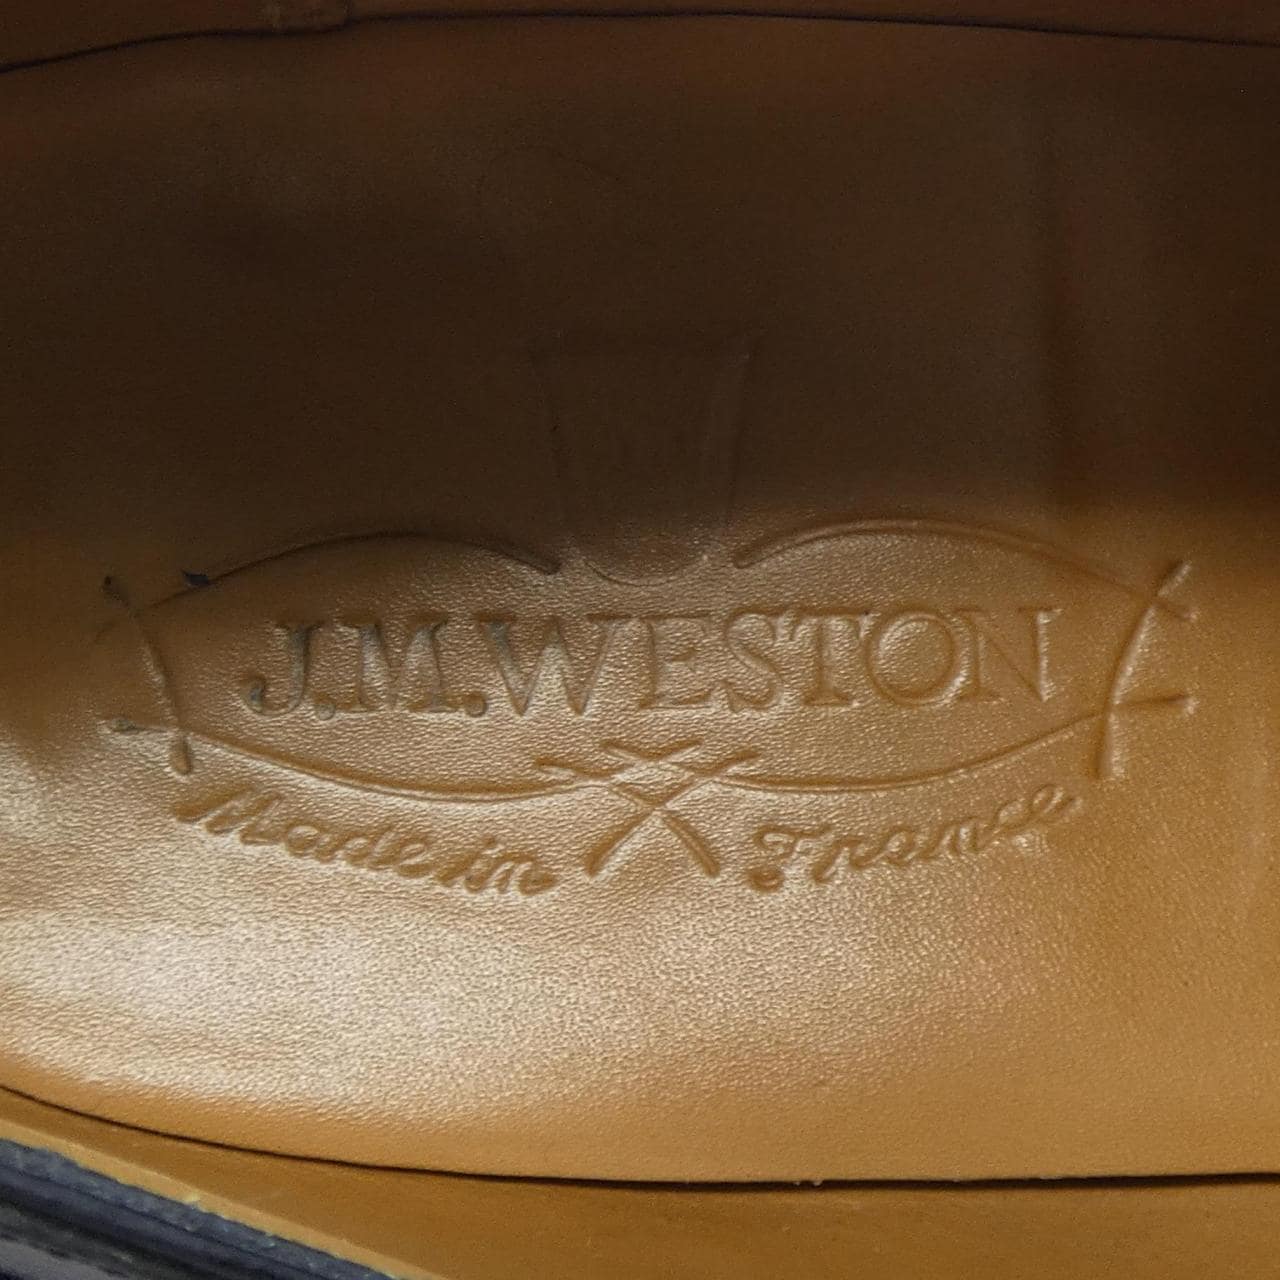 JM Weston JMWESTON dress shoes